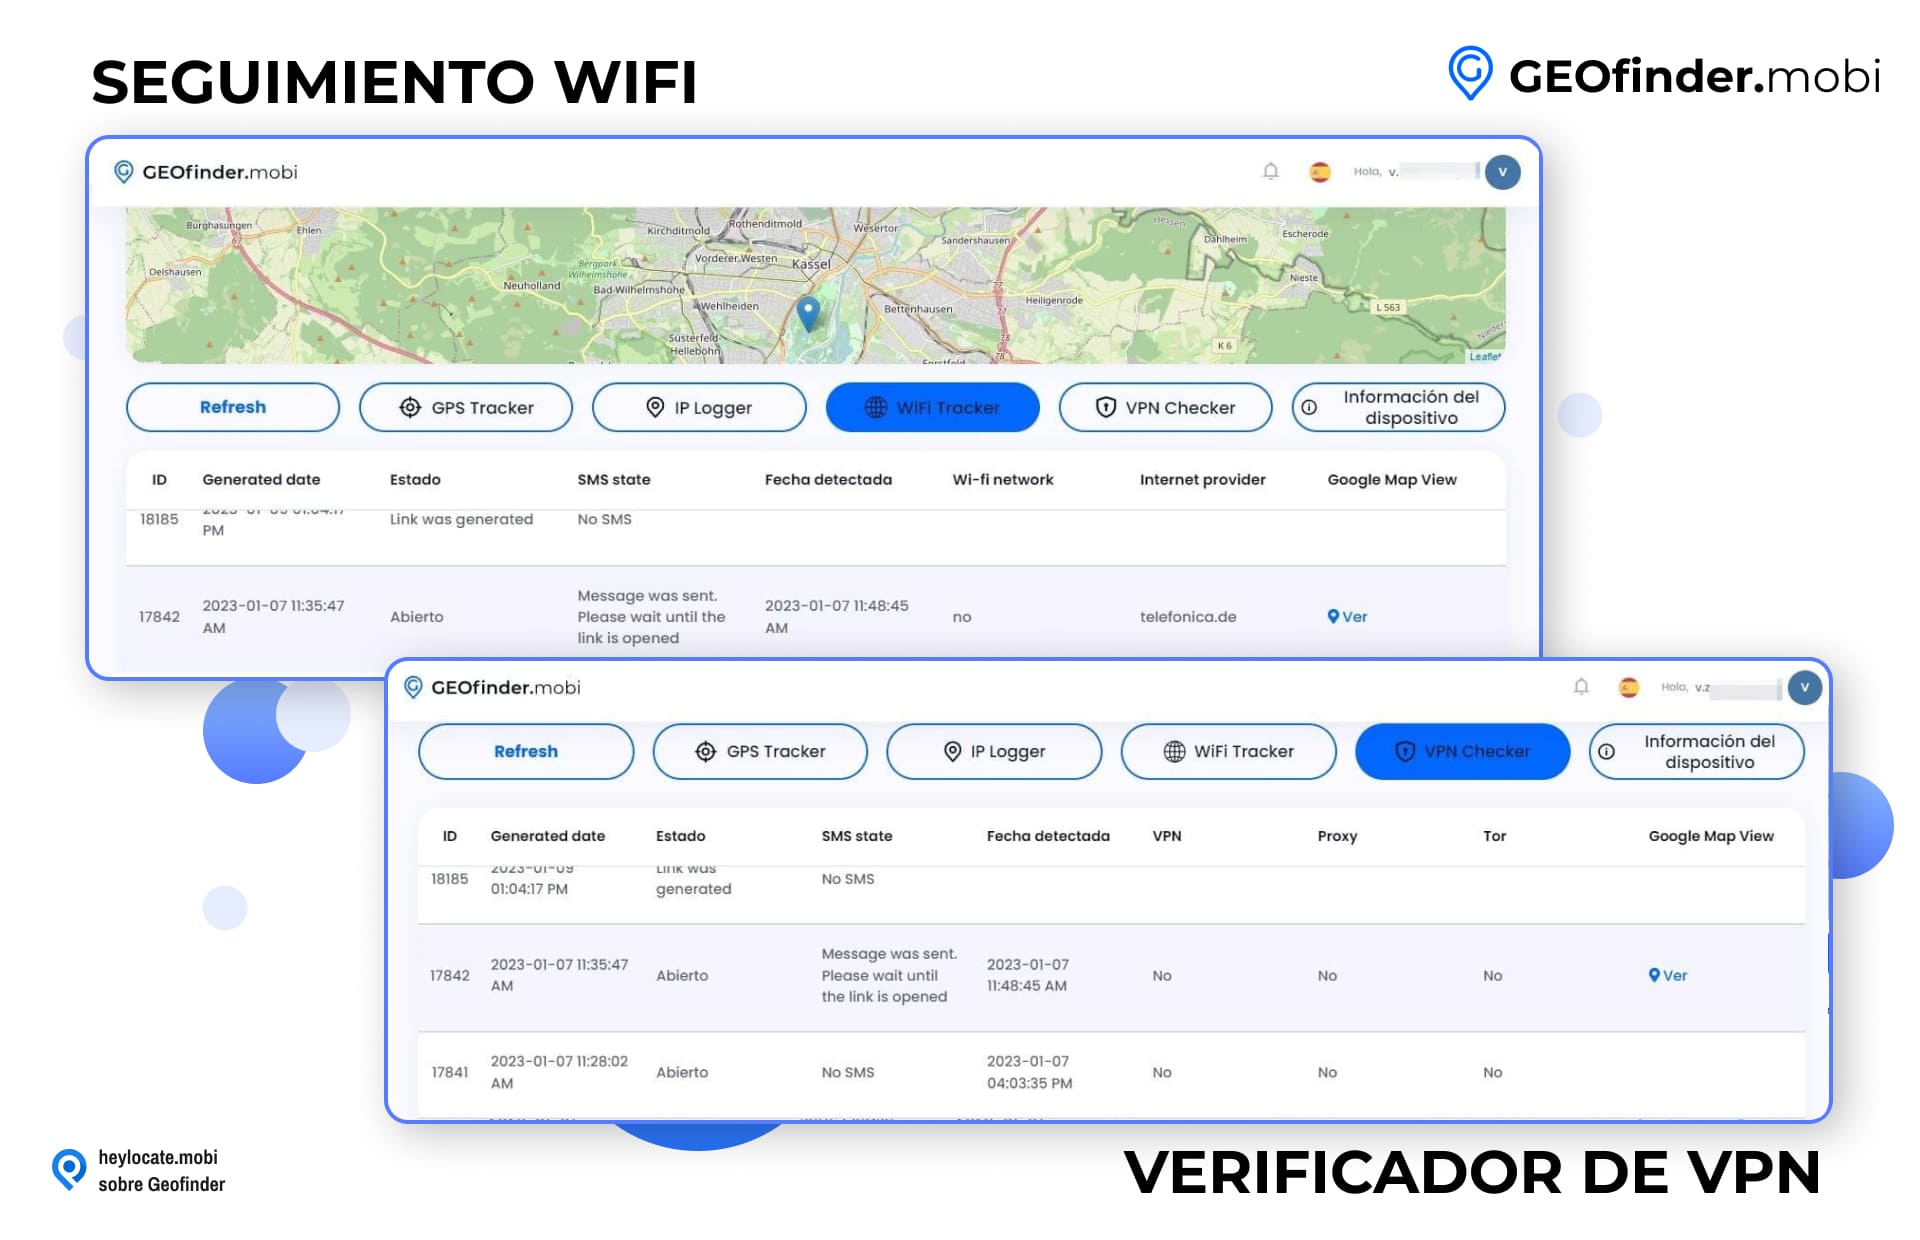 Interfaz de GEOfinder.mobi que muestra las pestañas WiFi Tracker y VPN Checker, con listados detallados de números de identificación, fechas, estados de SMS, fecha detectada e información de red para fines de seguimiento.